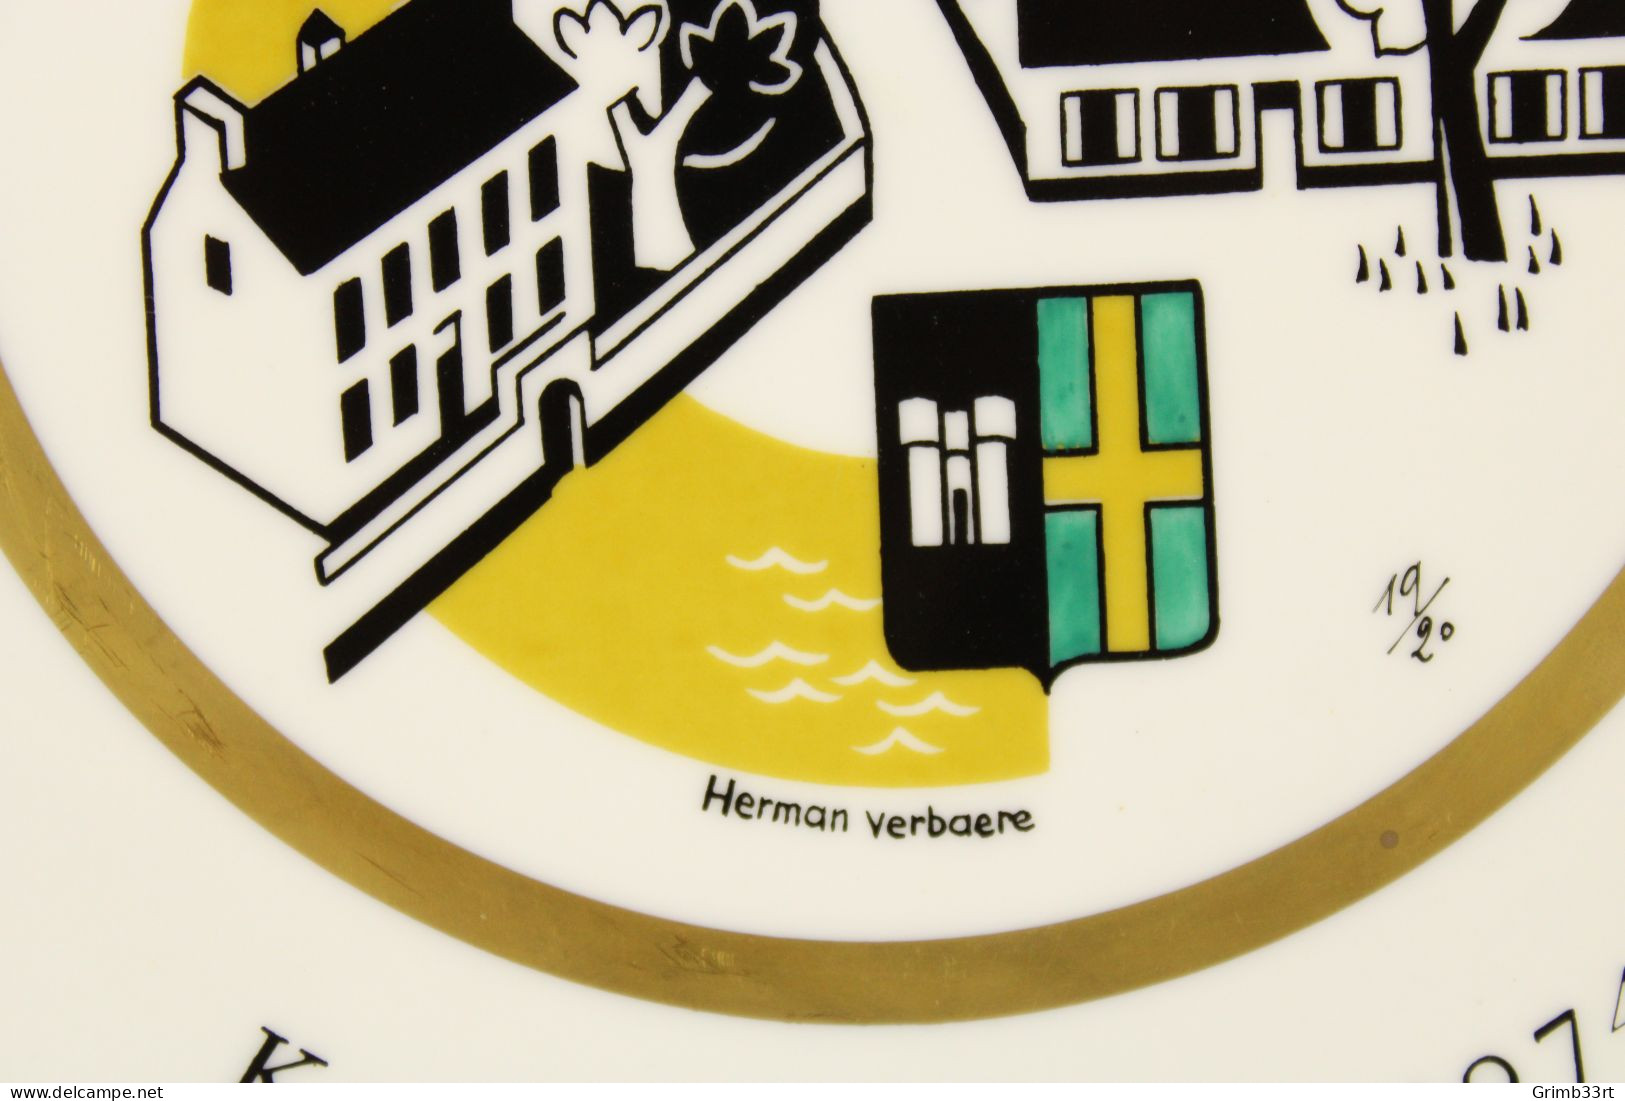 Deurle - Handbooggilde De Harlekijnen - 1974 - Herman Verbaere 19/20 - Sierbord Schuttersgilde - Boogschieten - 25.1 Cm - Boogschieten